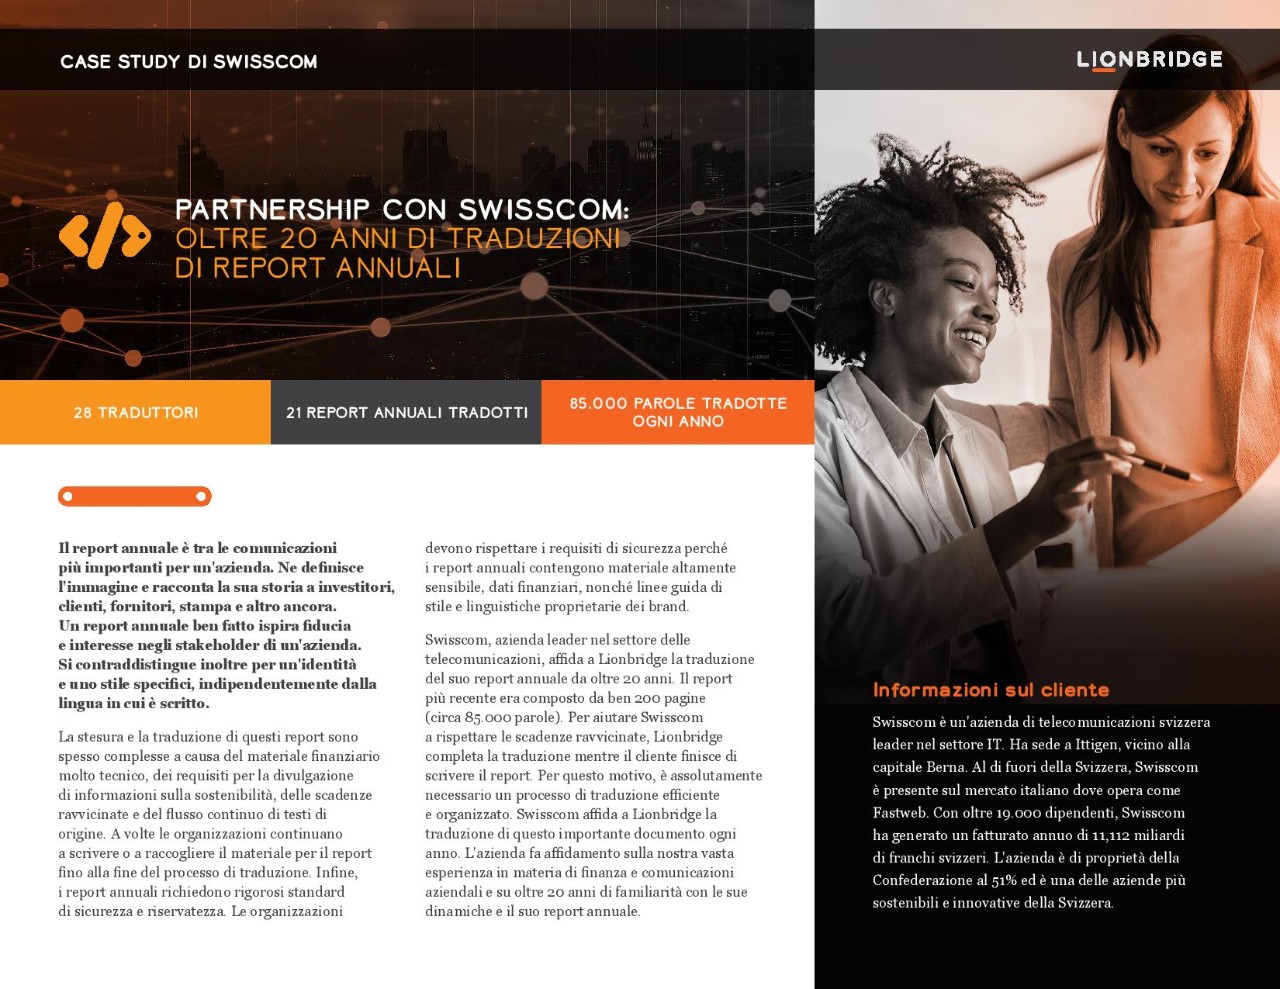 Copertina del case study di Swisscom